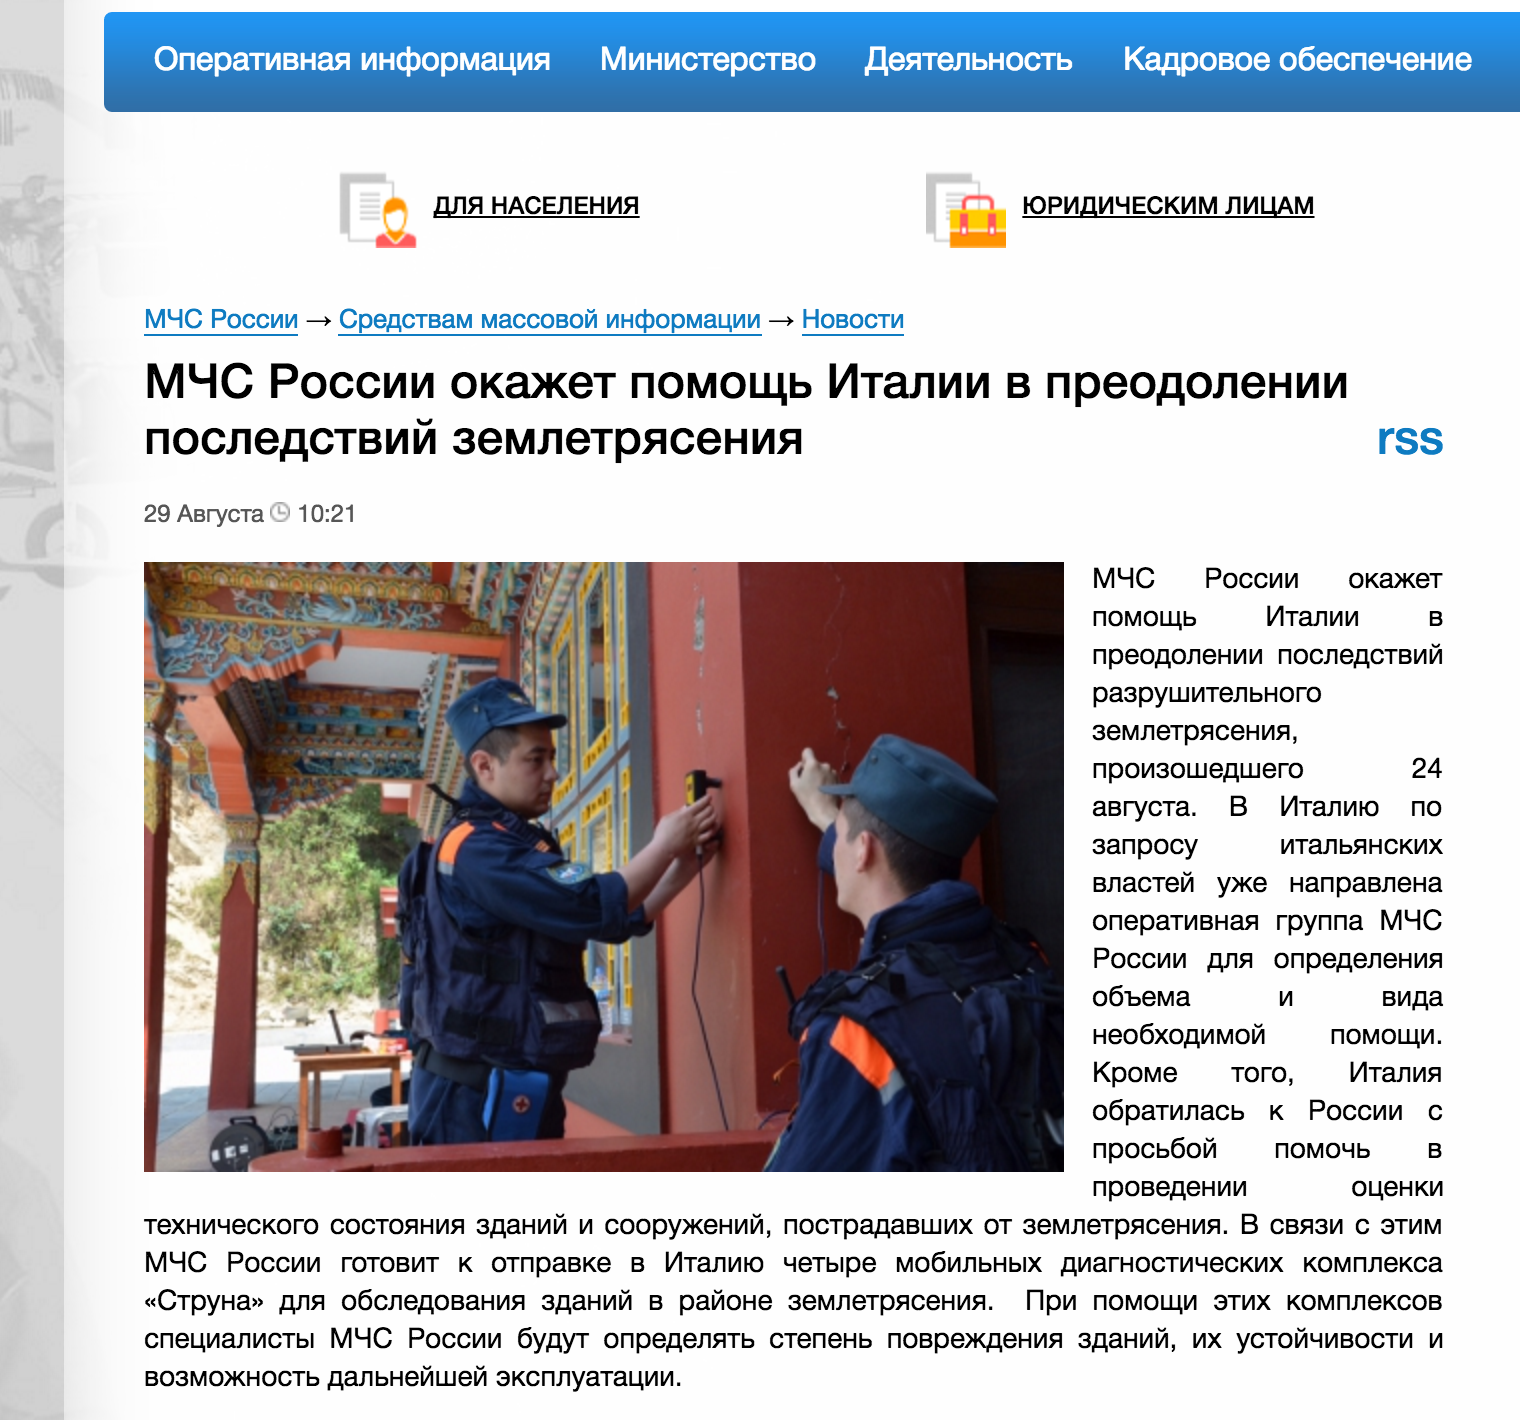 Captura de pantalla de la nota en la página del Ministerio de Emergencias de Rusia